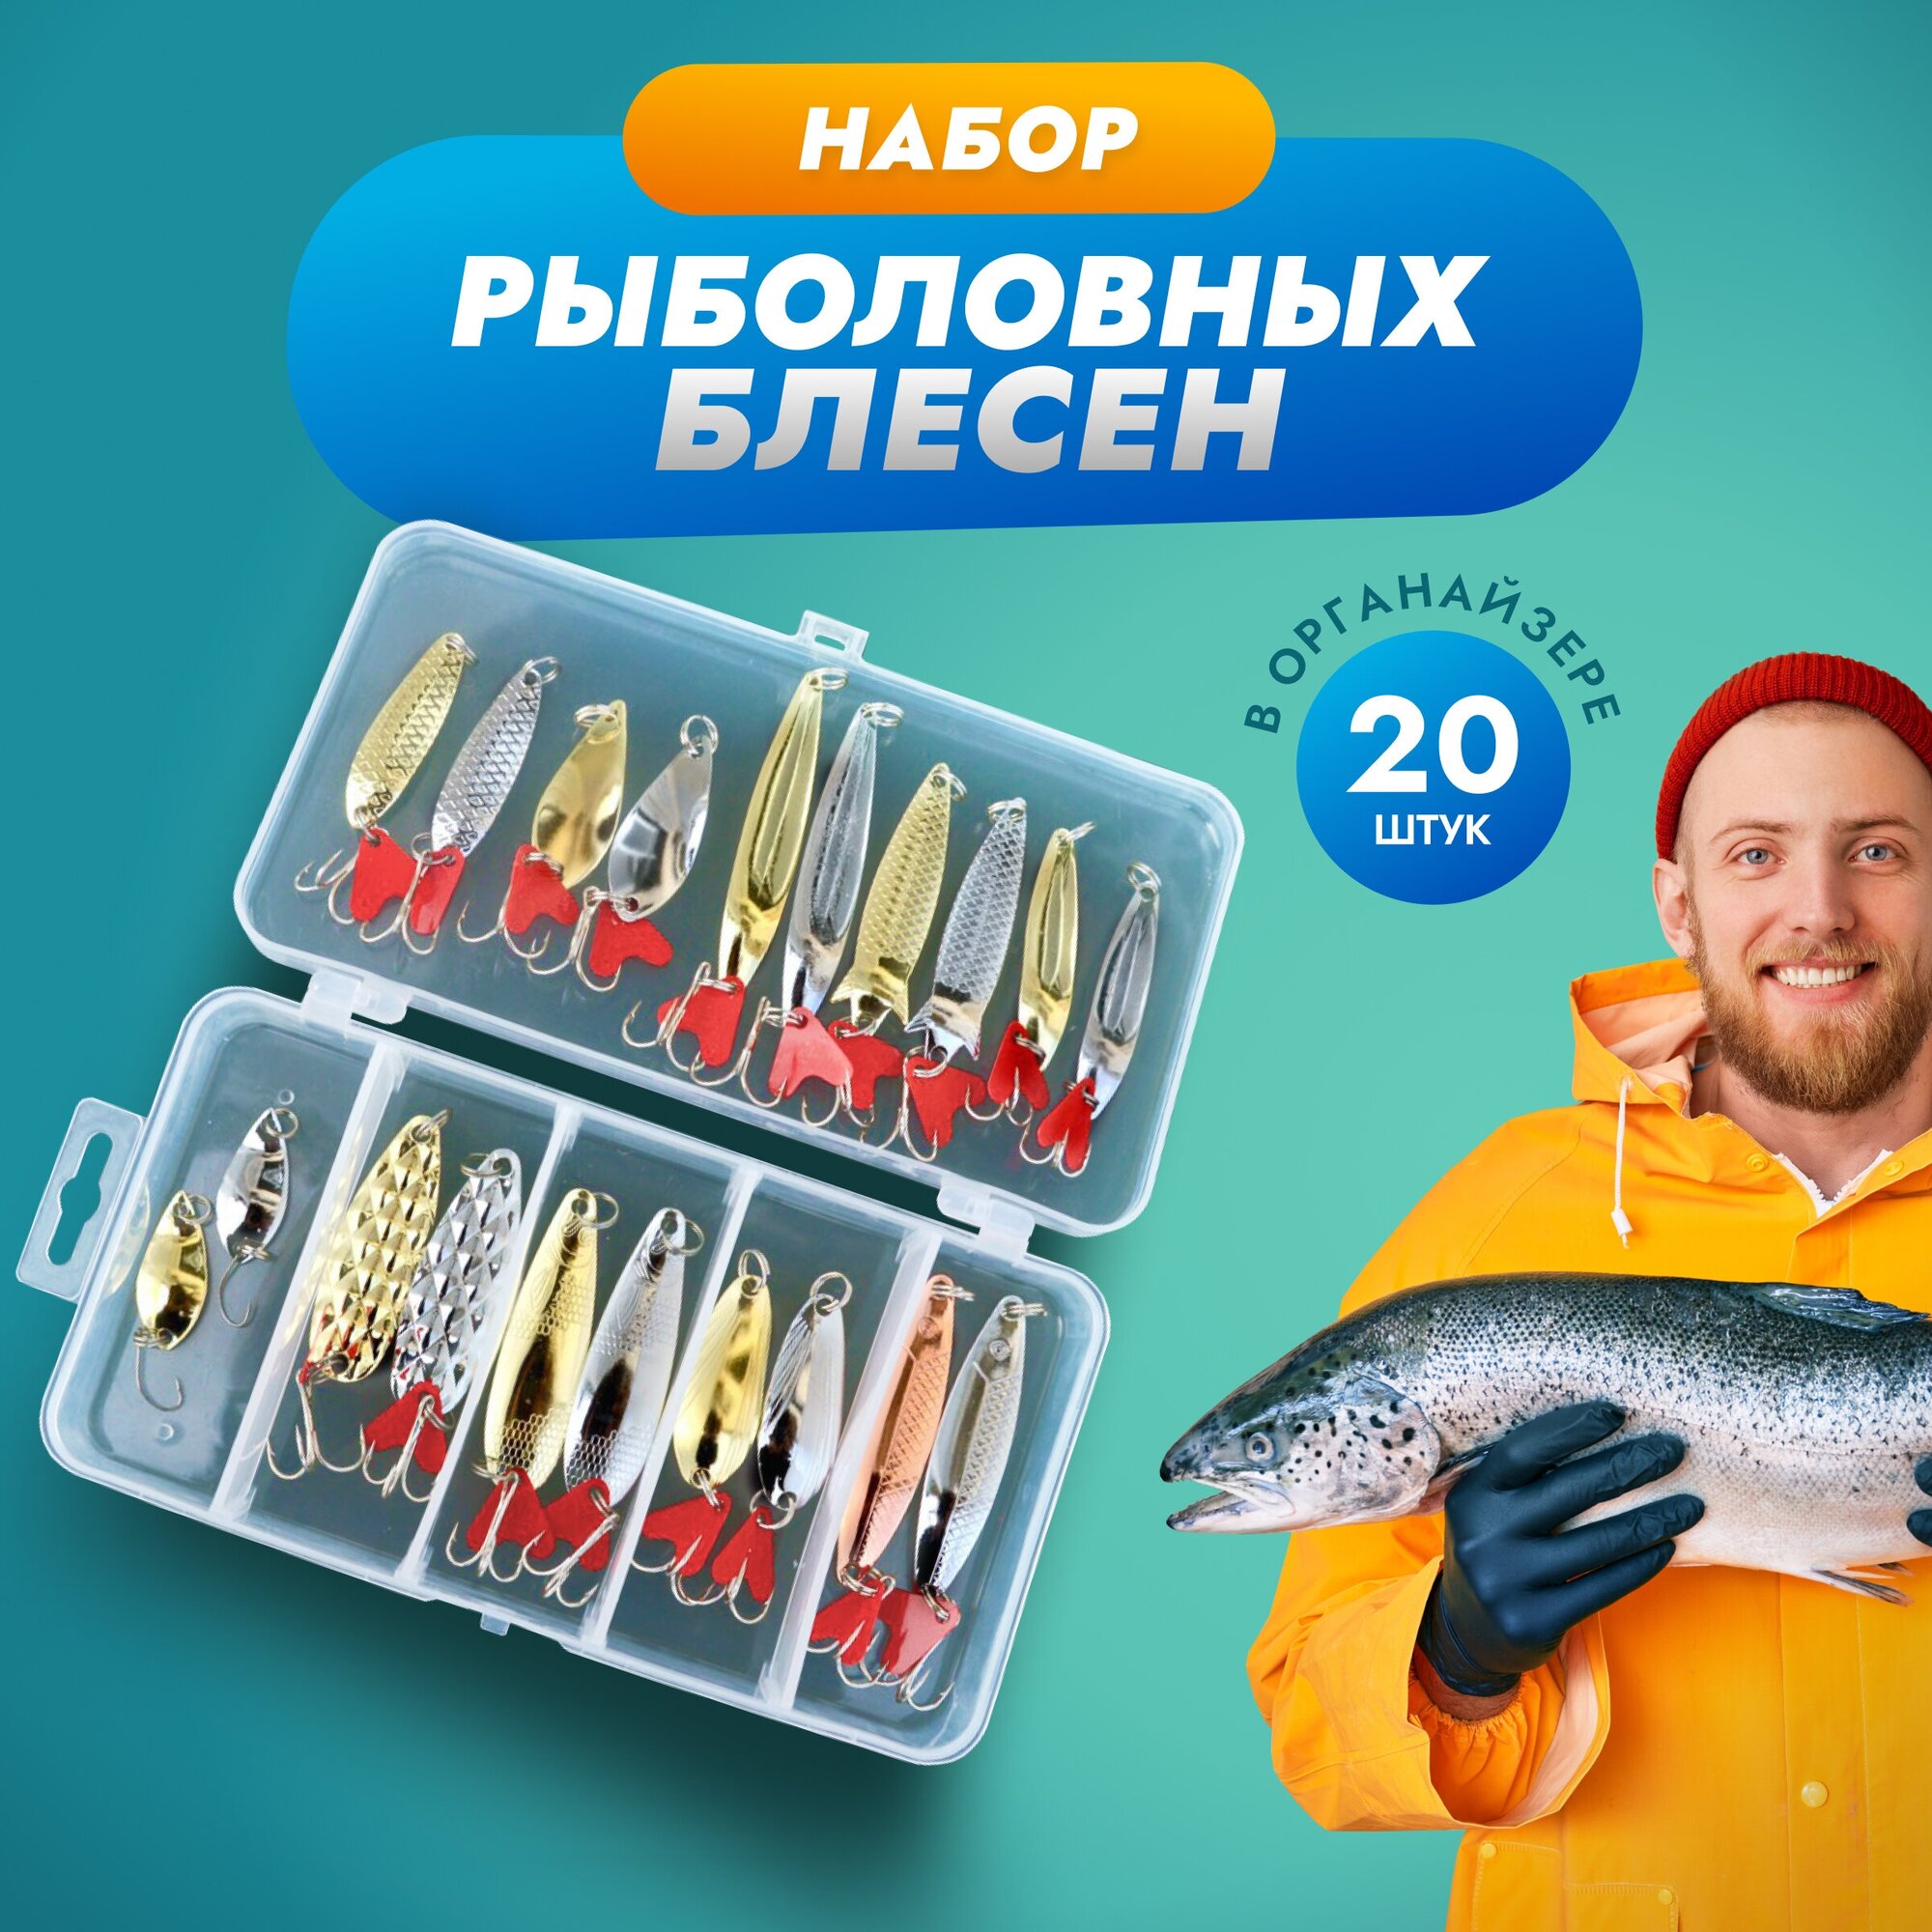 Блесна для рыбалки набор 20 штук с сердечком, рыболовные принадлежности, рыболовные принадлежности для летней рыбалки